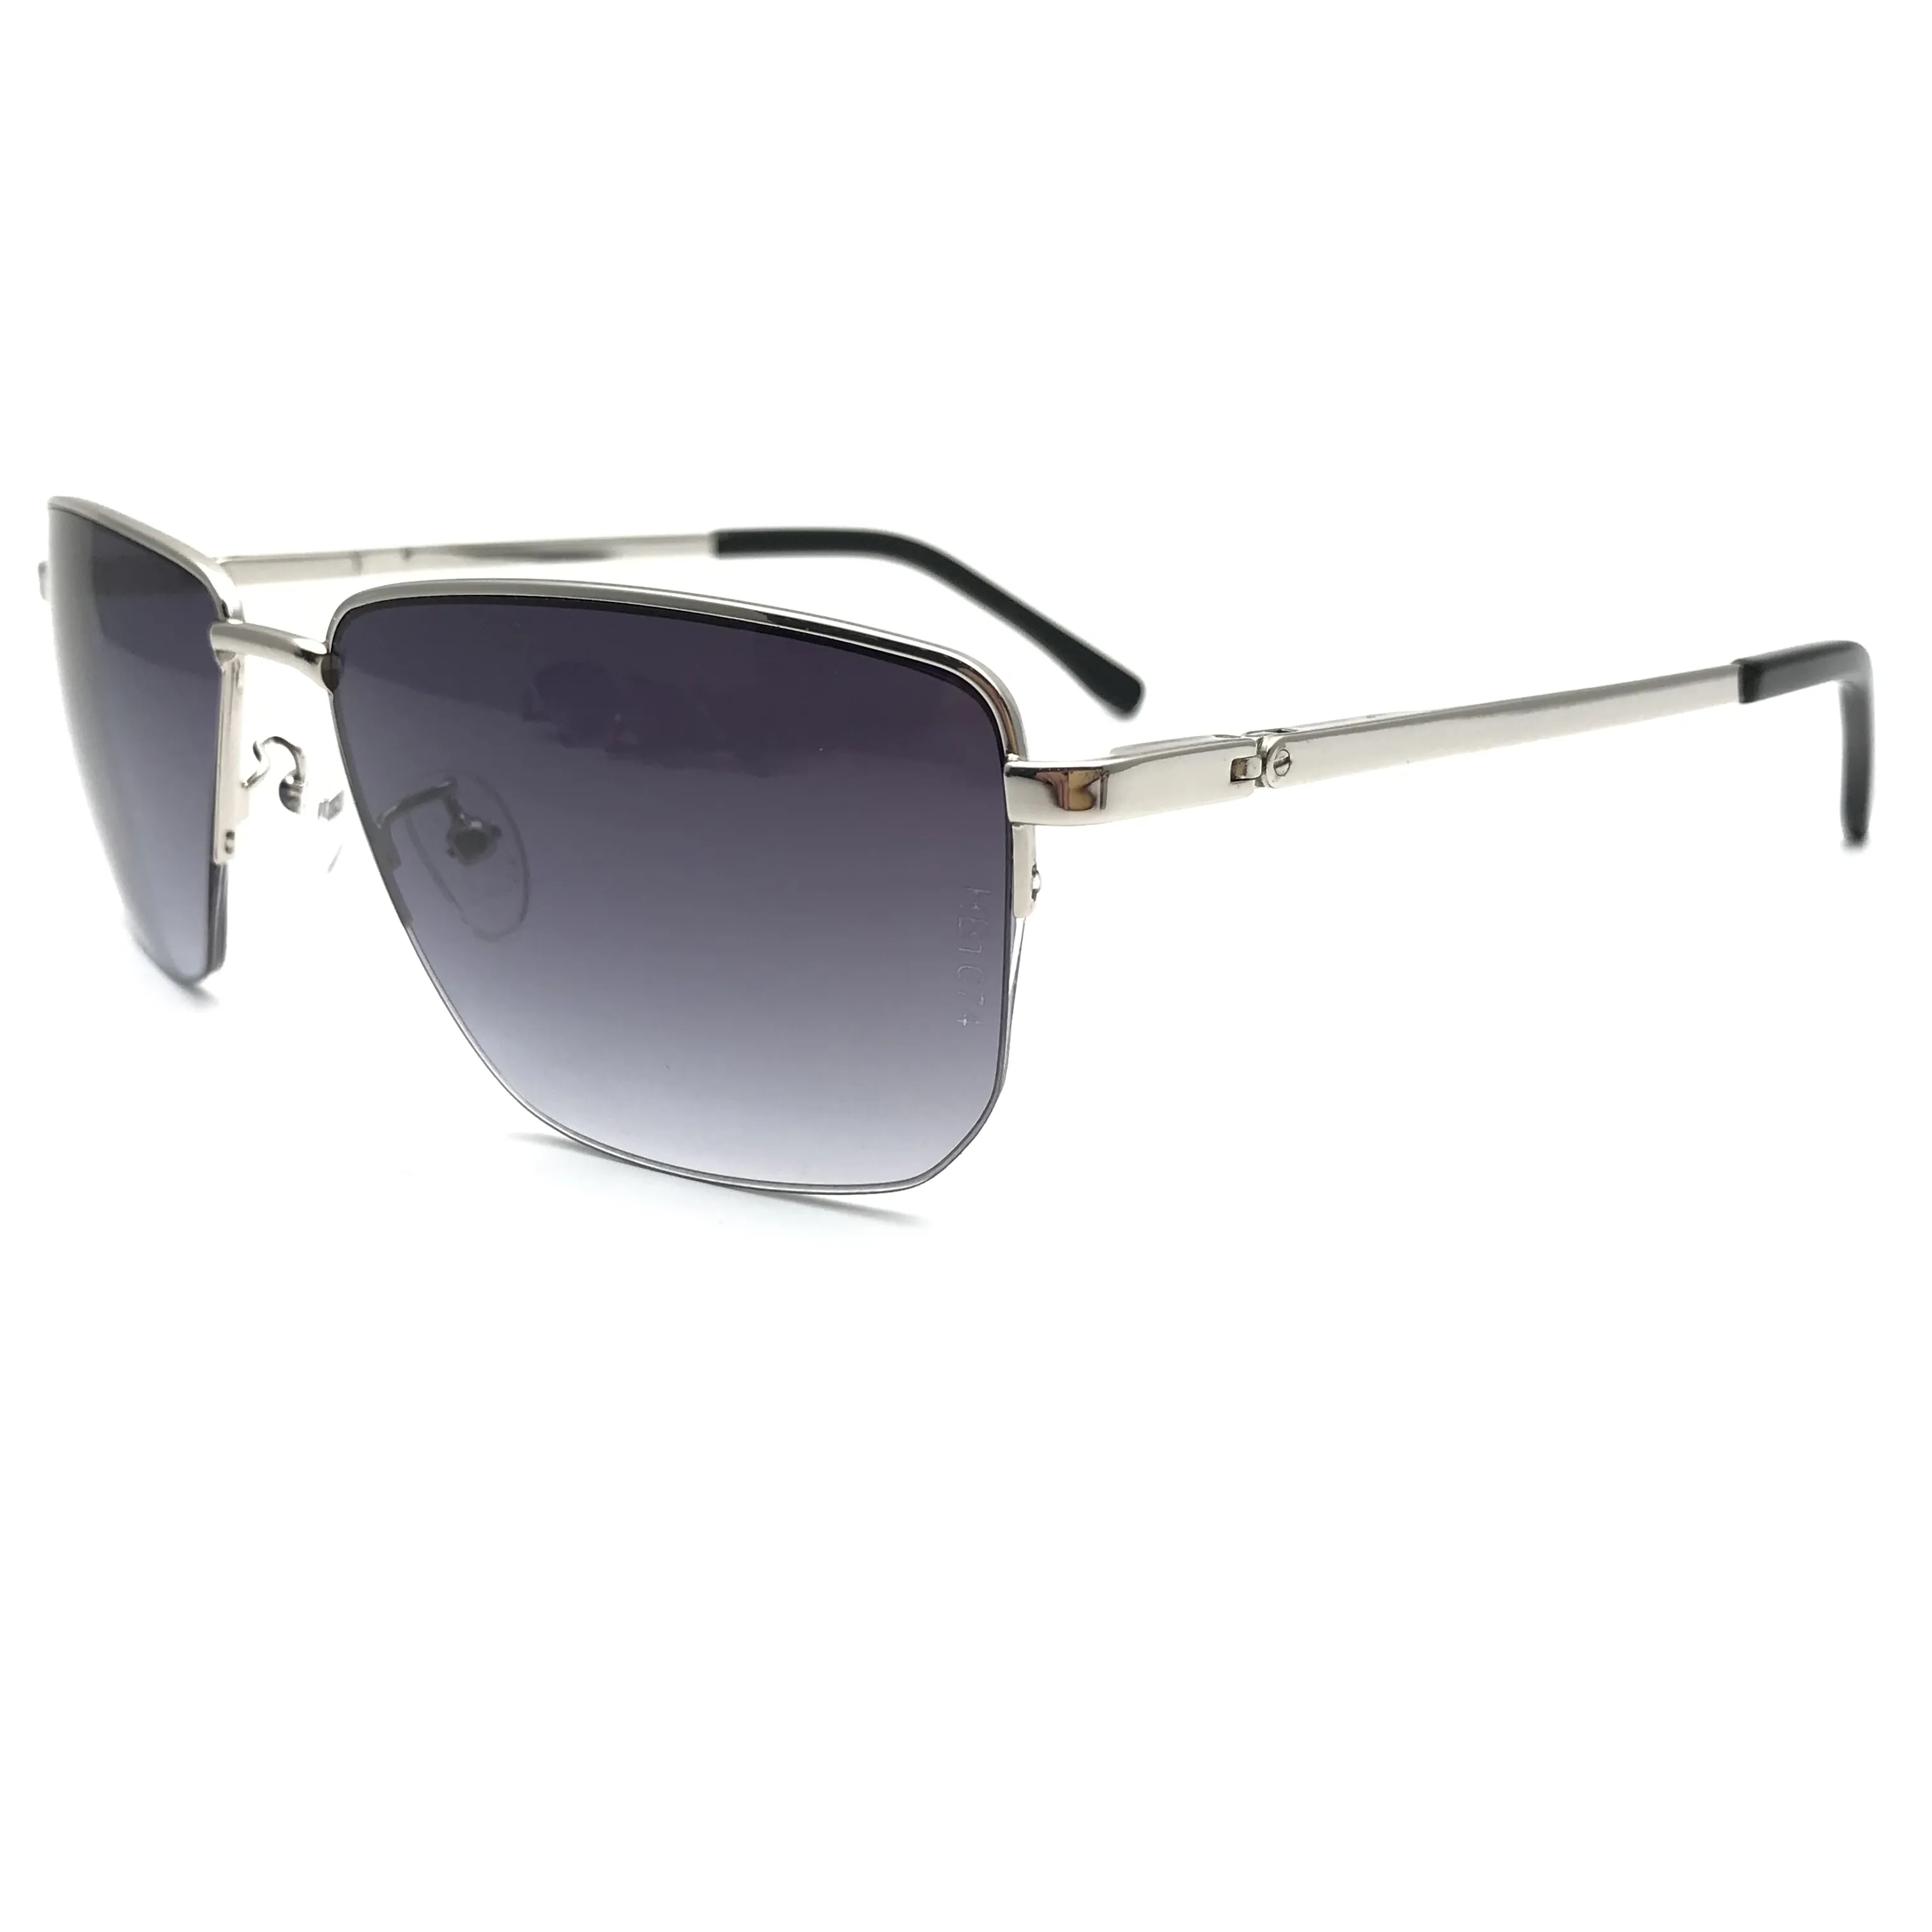 Gafas de sol polarizadas y redondas para hombre, lentes de sol personalizadas, a la moda, al mejor precio, alta calidad